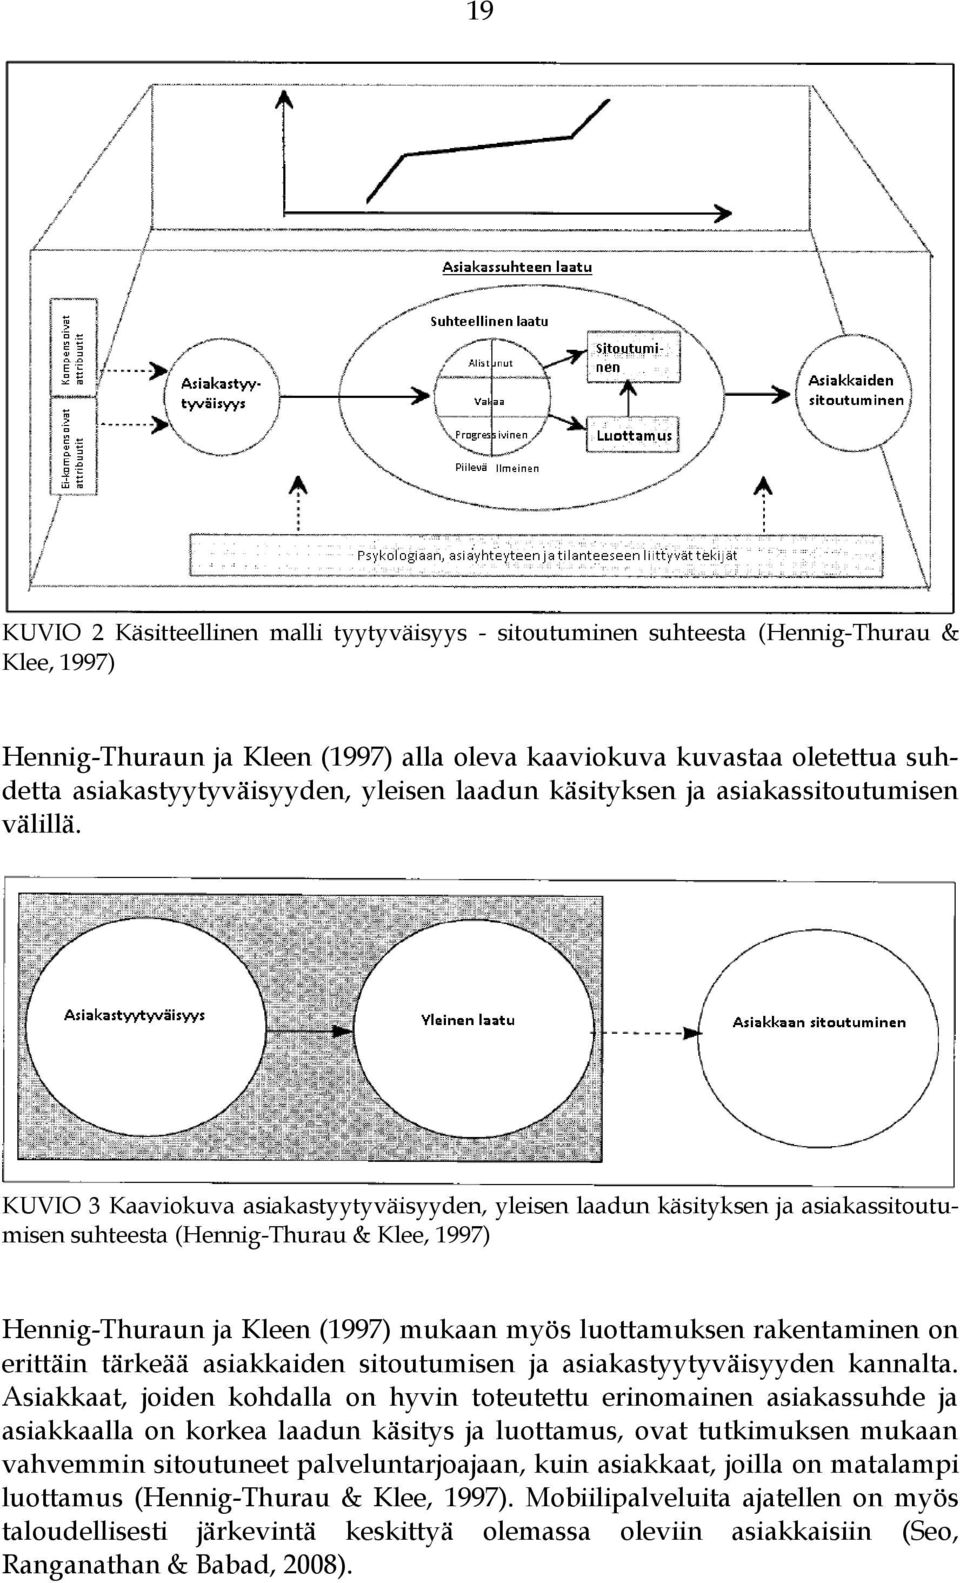 KUVIO 3 Kaaviokuva asiakastyytyväisyyden, yleisen laadun käsityksen ja asiakassitoutumisen suhteesta (Hennig-Thurau & Klee, 1997) Hennig-Thuraun ja Kleen (1997) mukaan myös luottamuksen rakentaminen